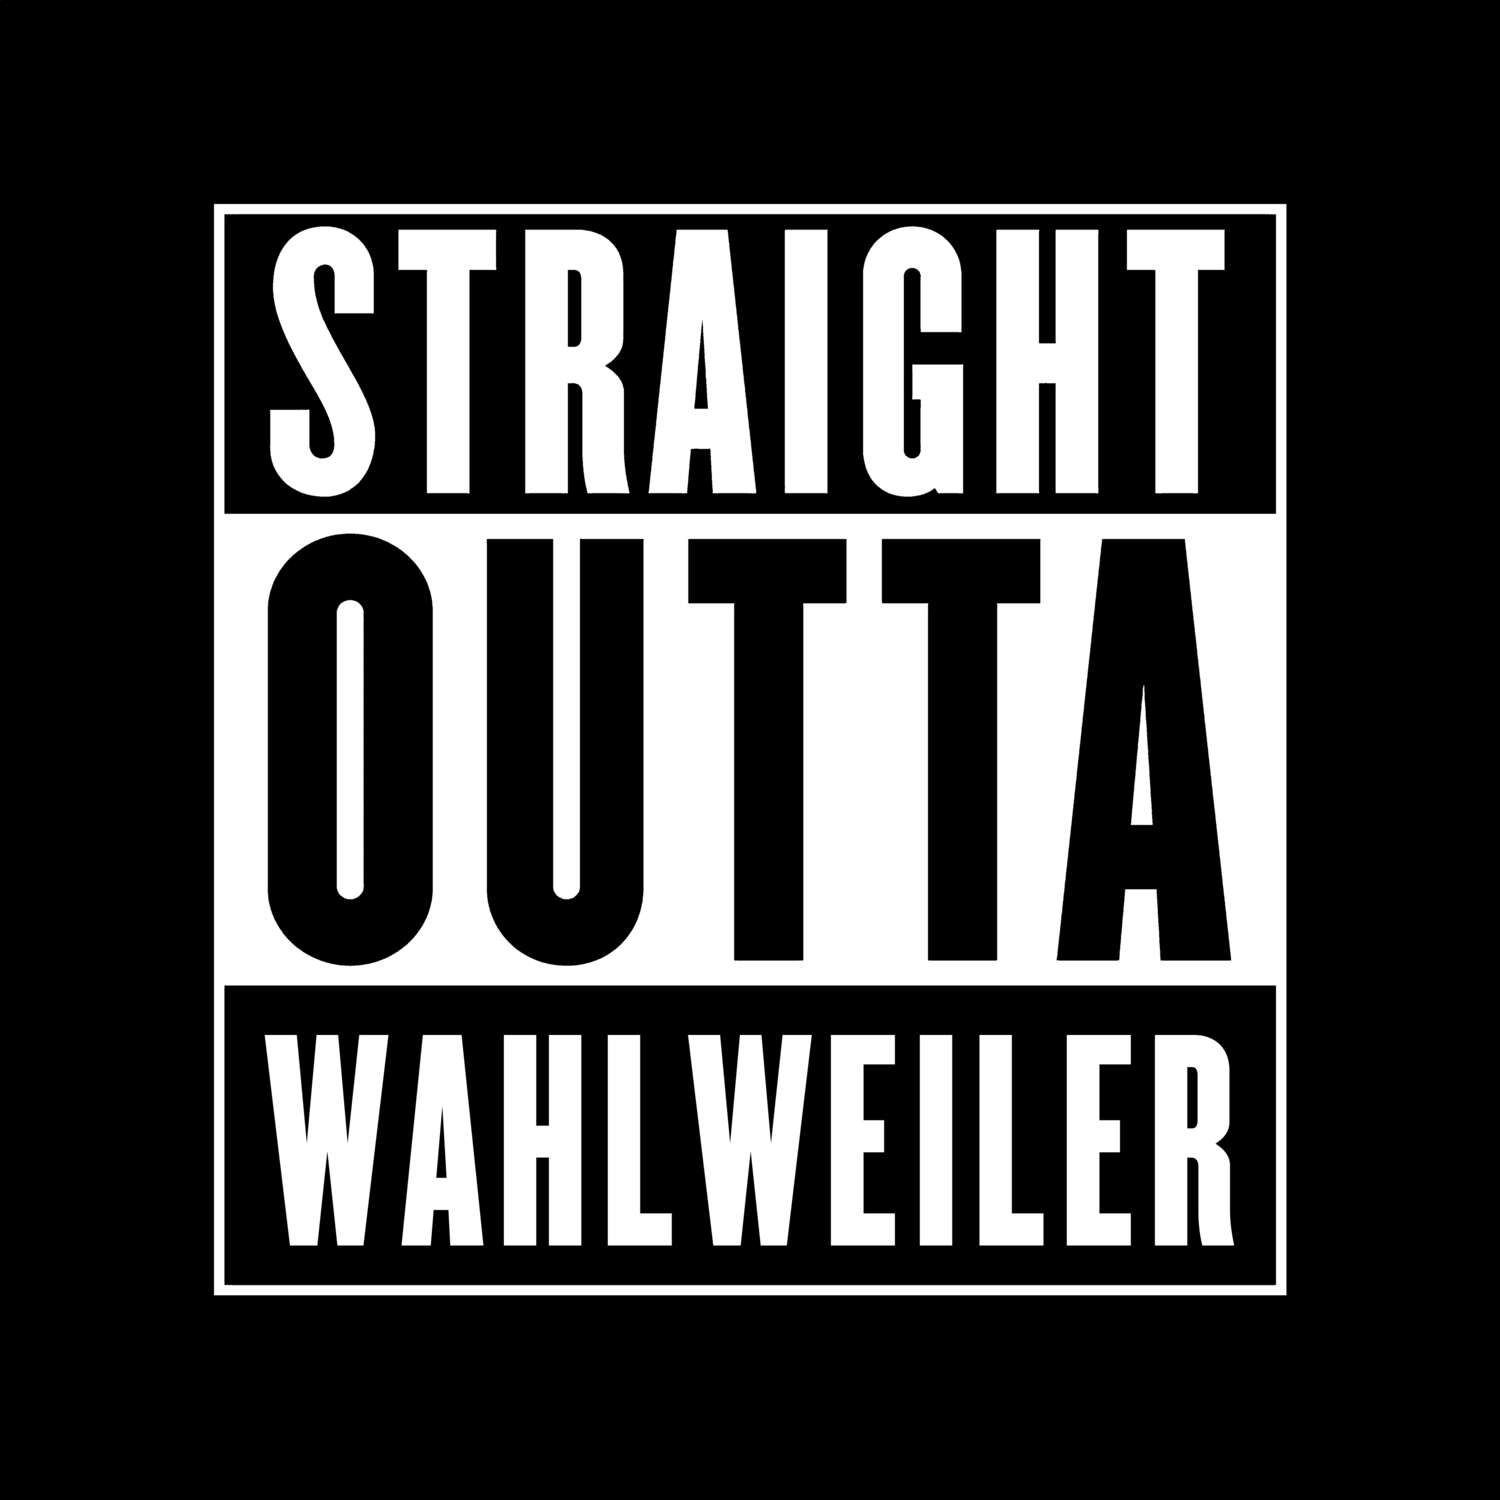 Wahlweiler T-Shirt »Straight Outta«